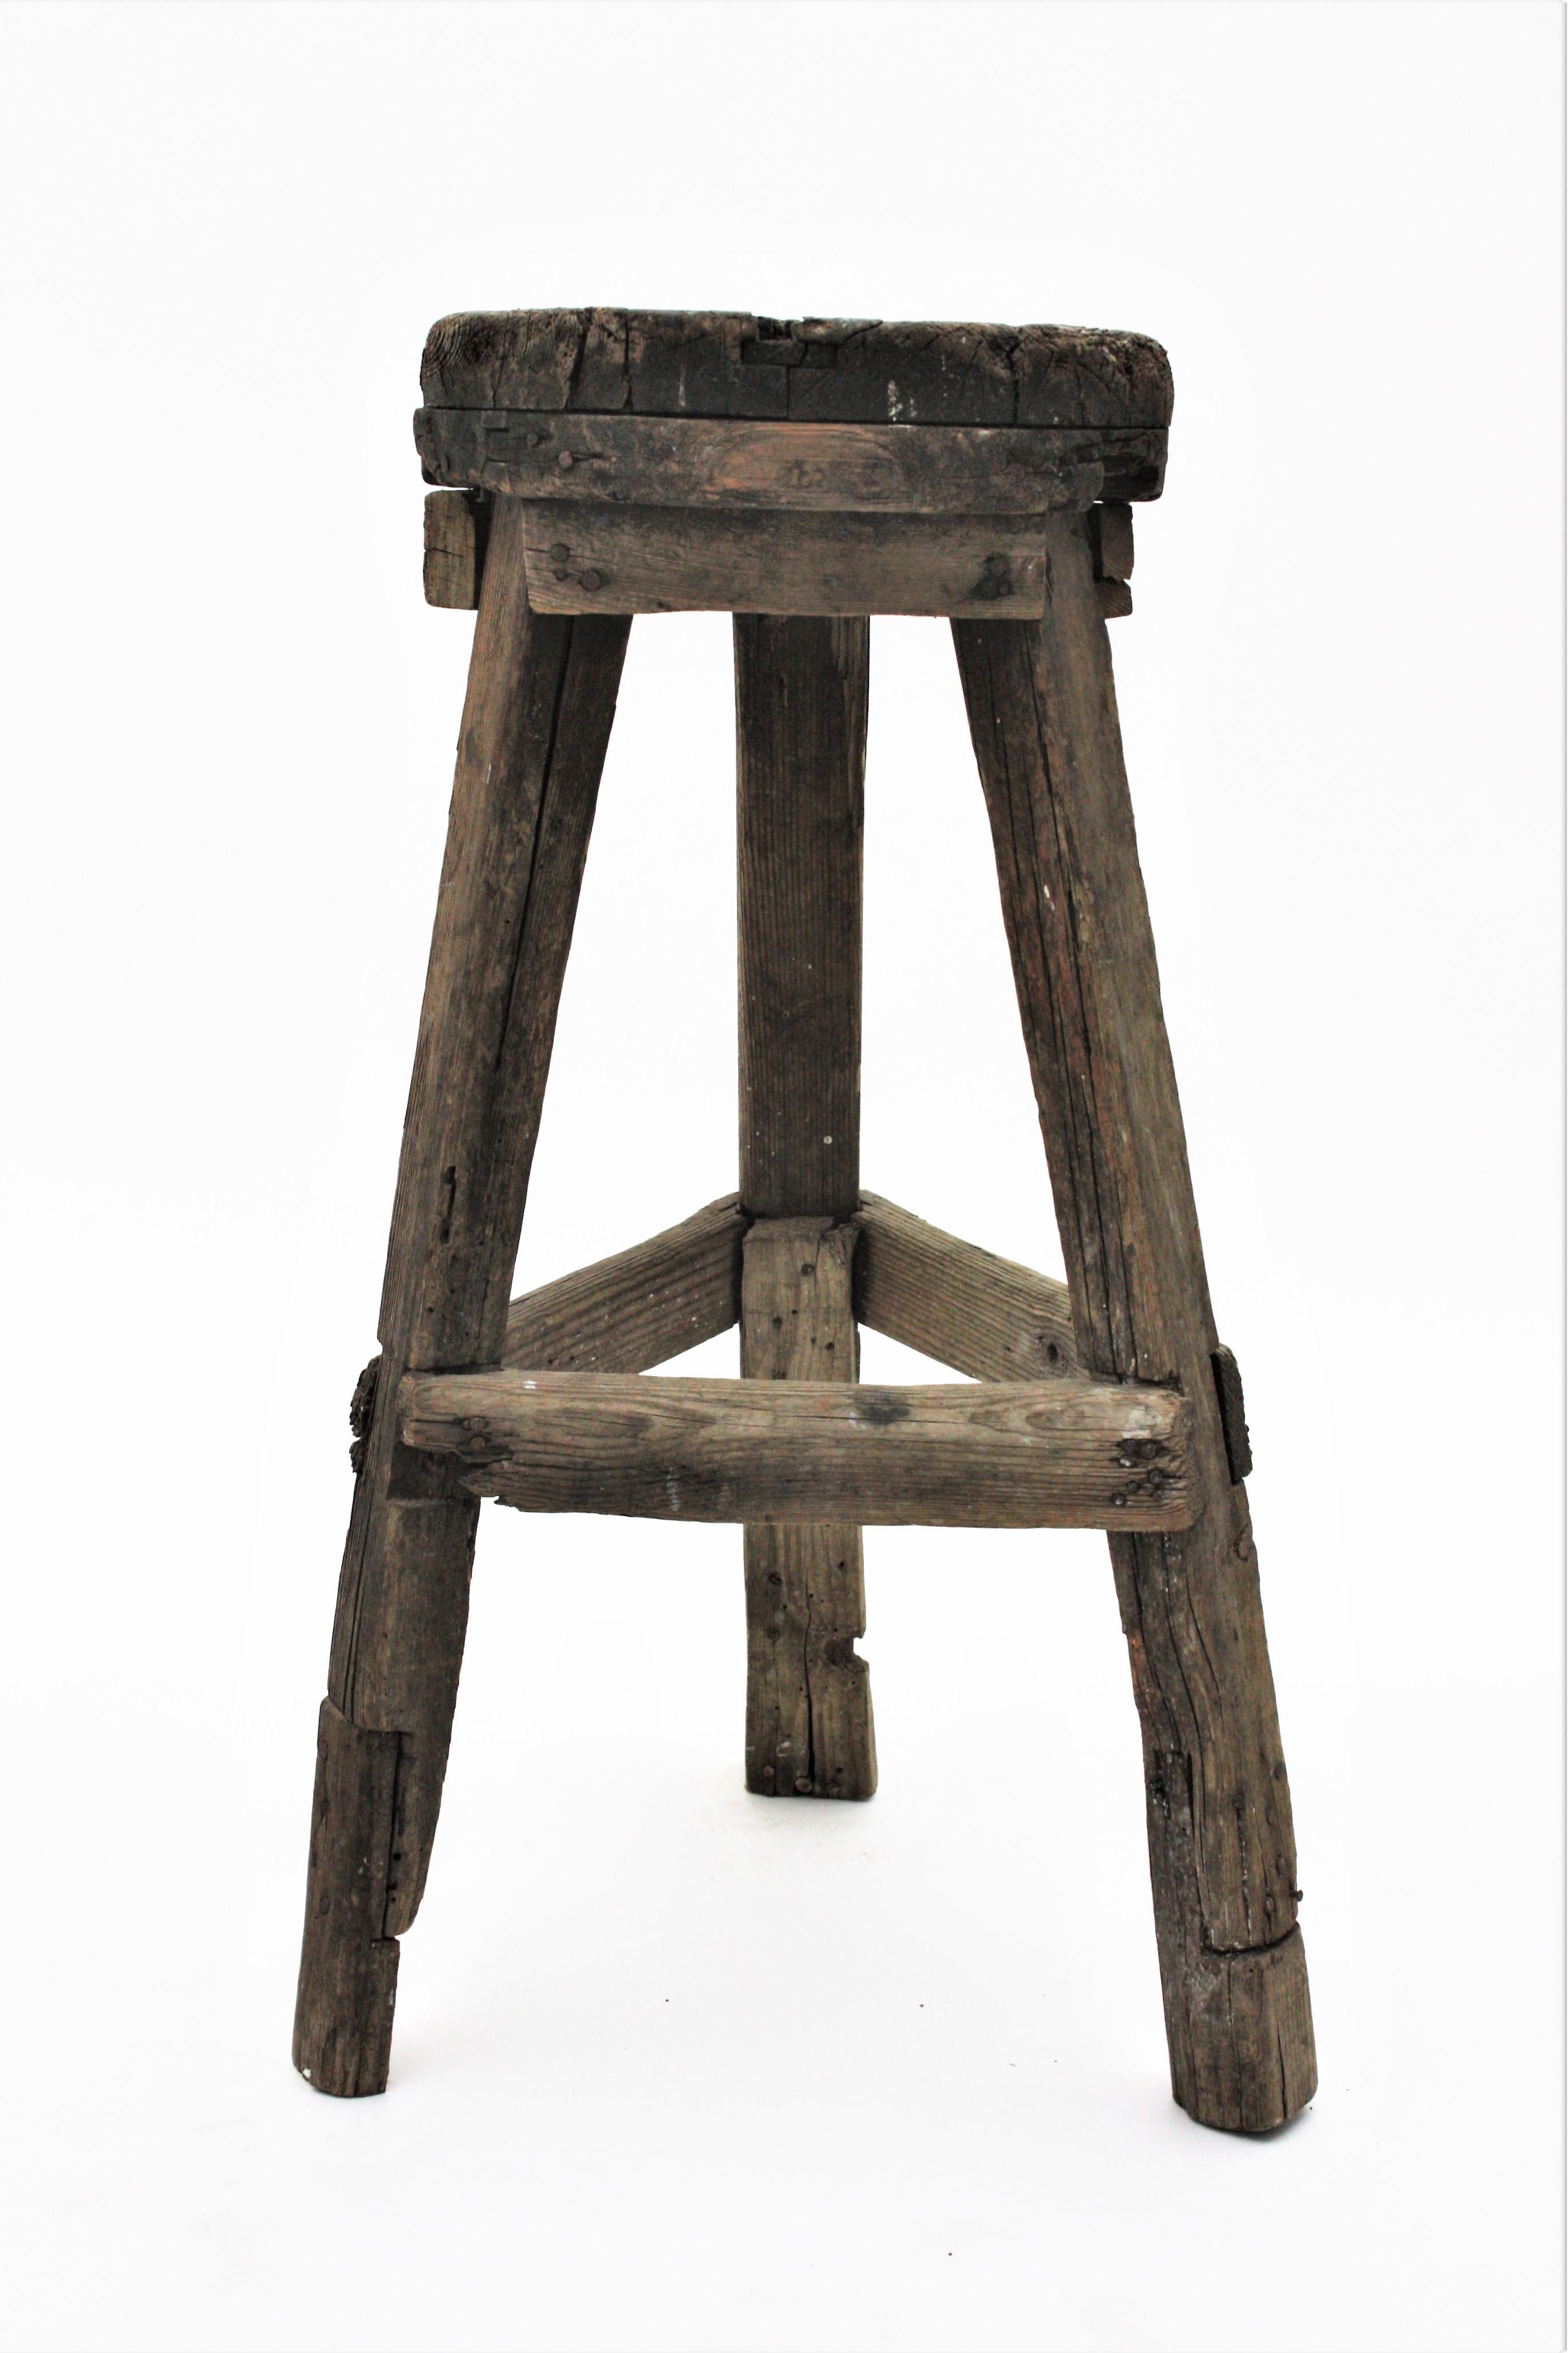 Tabouret haut en bois rustique avec une base à trois pieds et une assise ronde. Espagne, années 1920-1930.
Originaire du nord de l'Espagne, ce tabouret rustique a une construction primitive, une forme et un caractère remarquables.
Ce tabouret